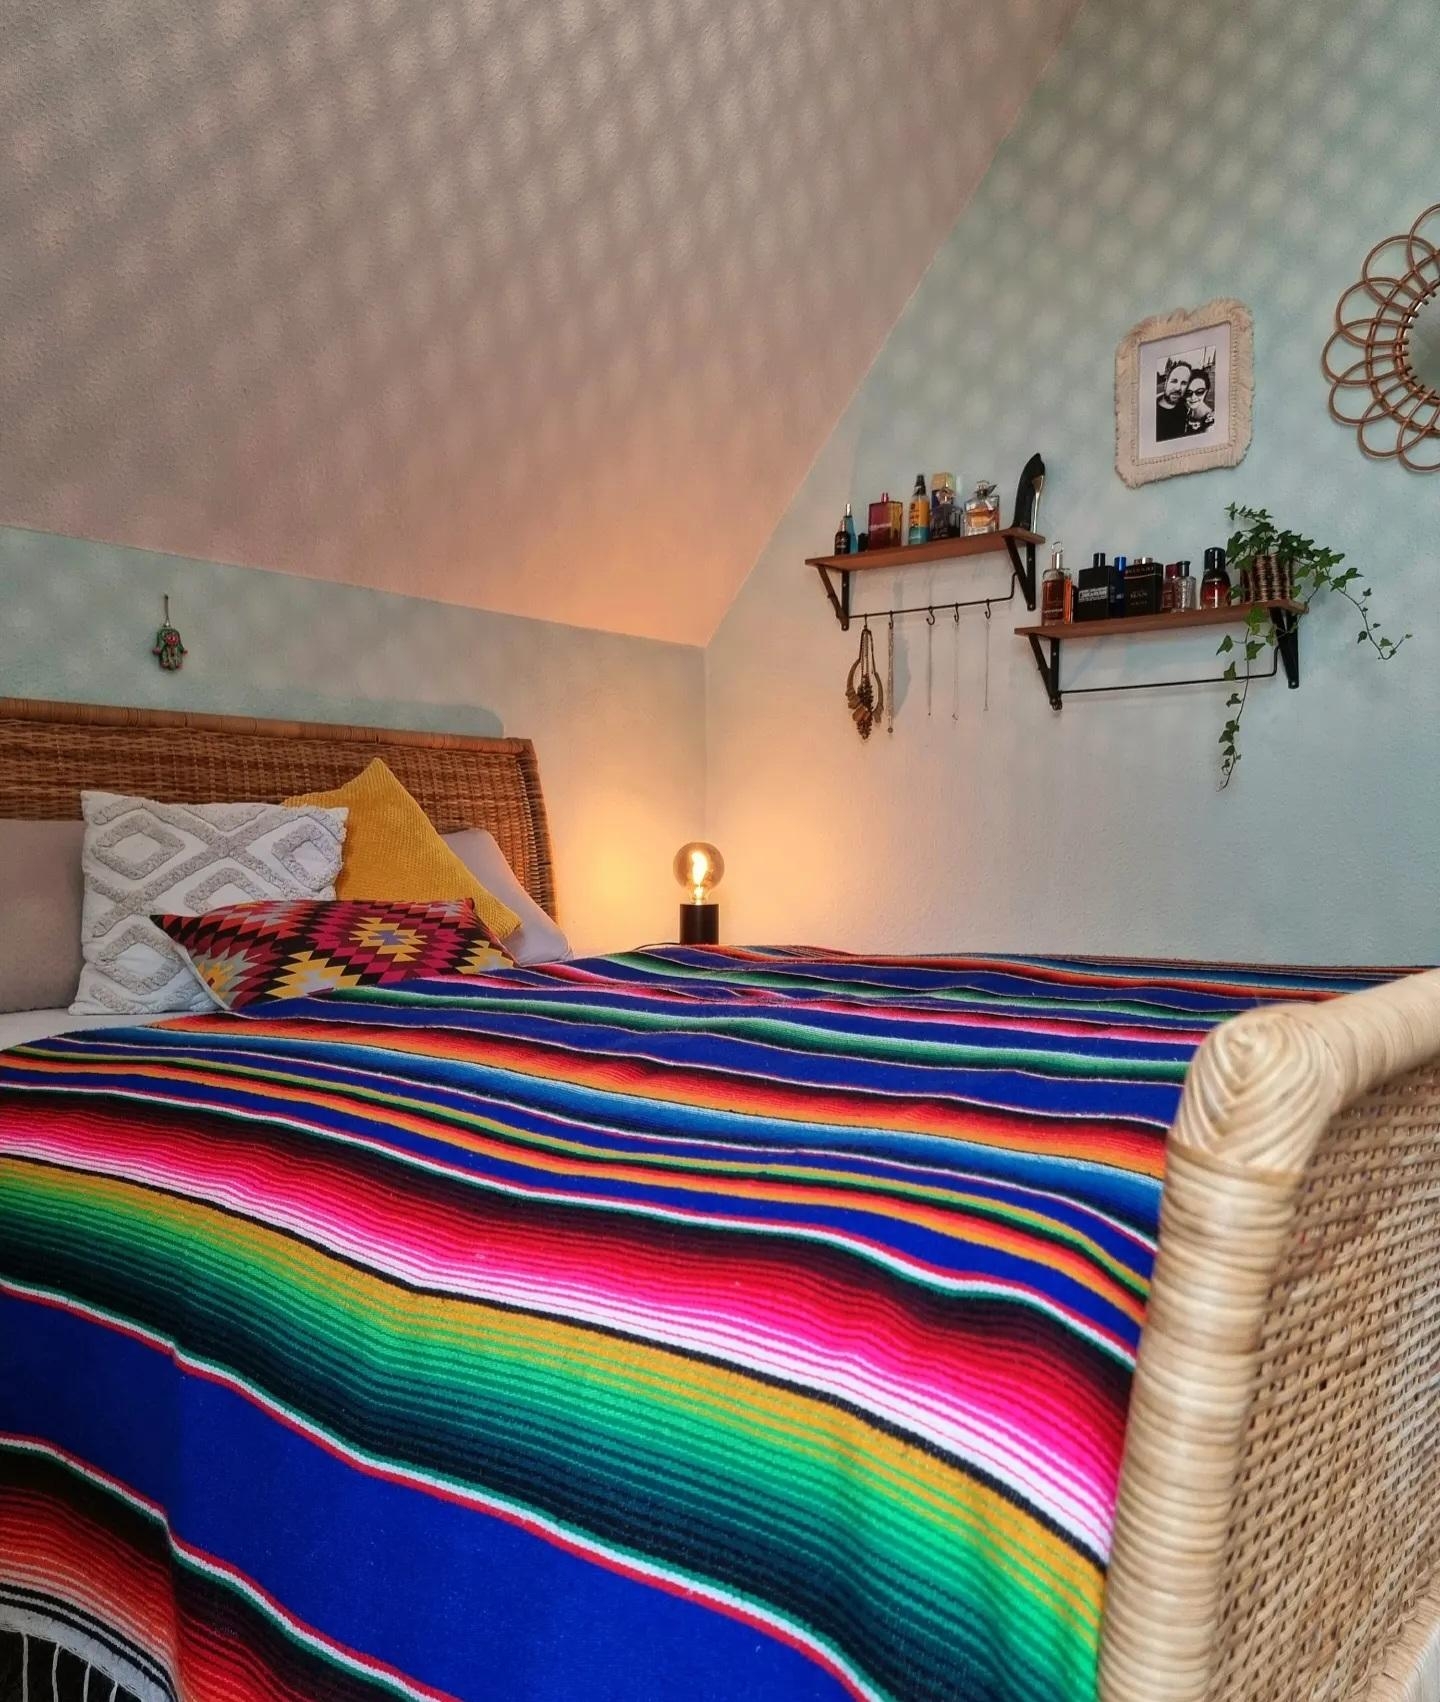 Immer noch in den #Bettüberwurf verliebt💙 #Schlafzimmer #cozy #Rattan #Dachschräge #ethno #boho #hygge #Wandgestaltung